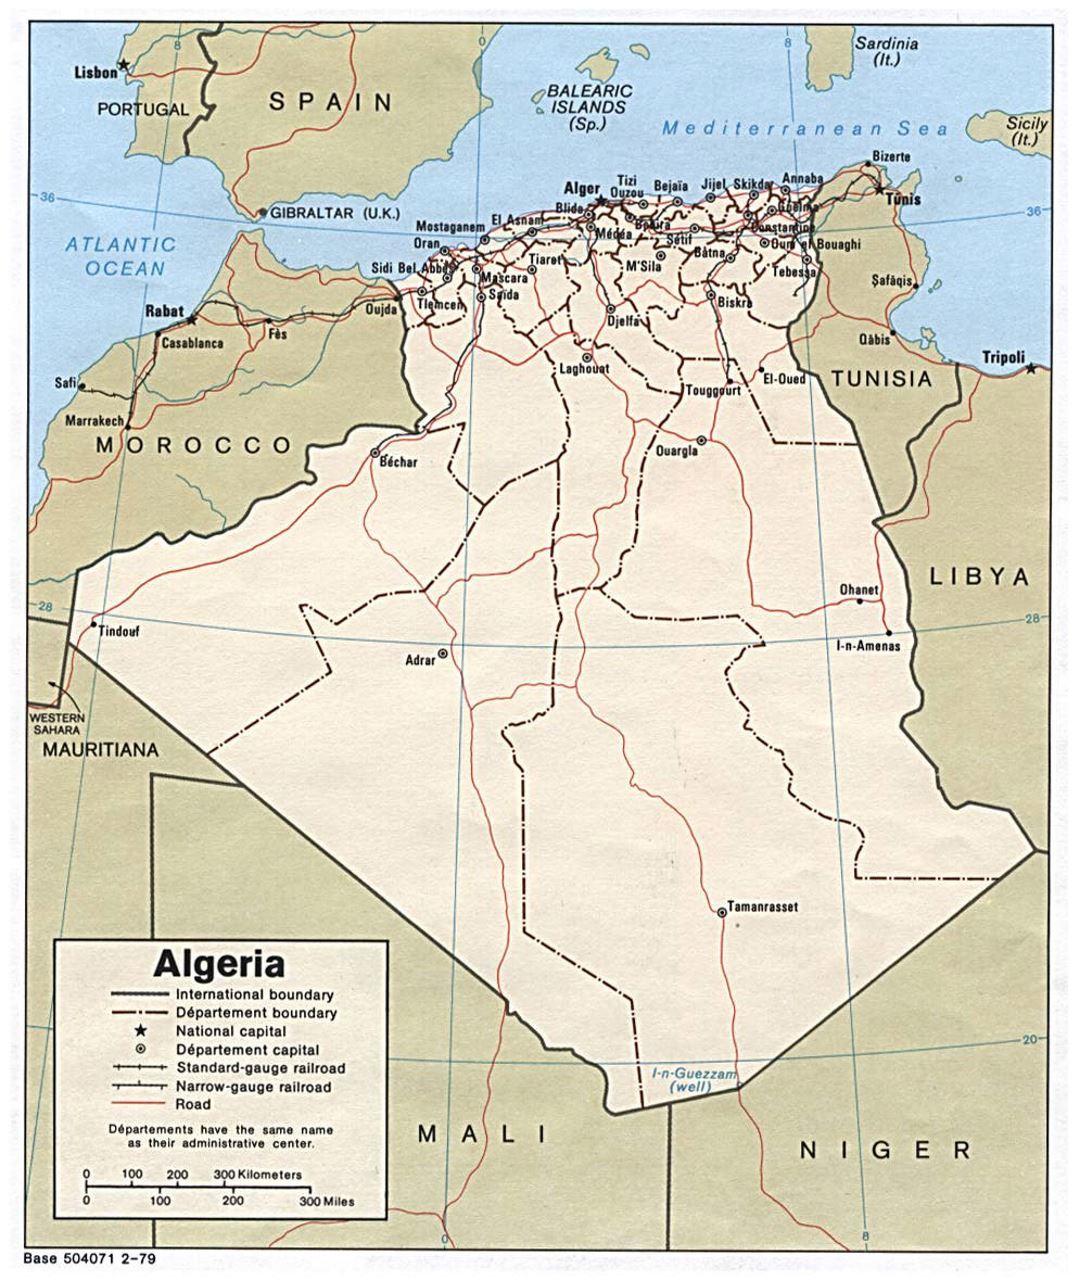 Detallado mapa político y administrativo de Argelia con carreteras, ferrocarriles y principales ciudades - 1979